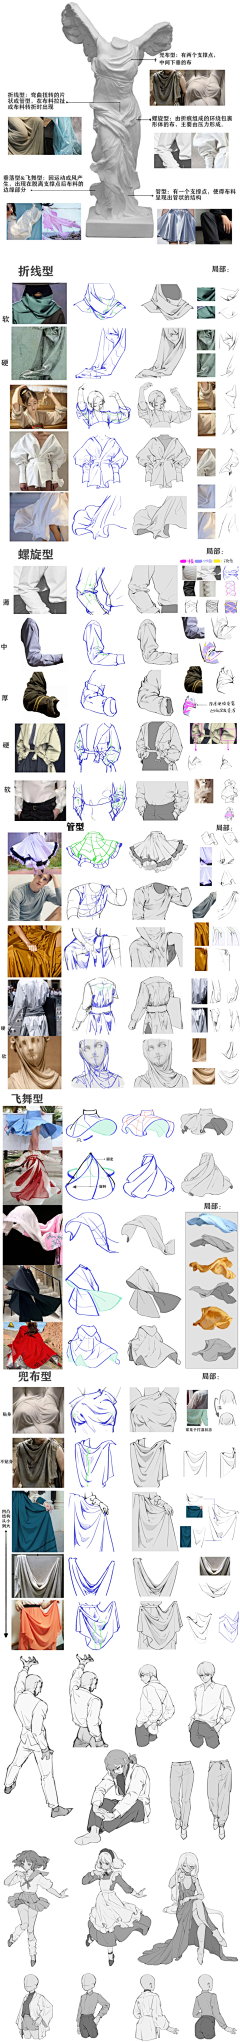 Leo0120采集到人体衣服画法基础理解